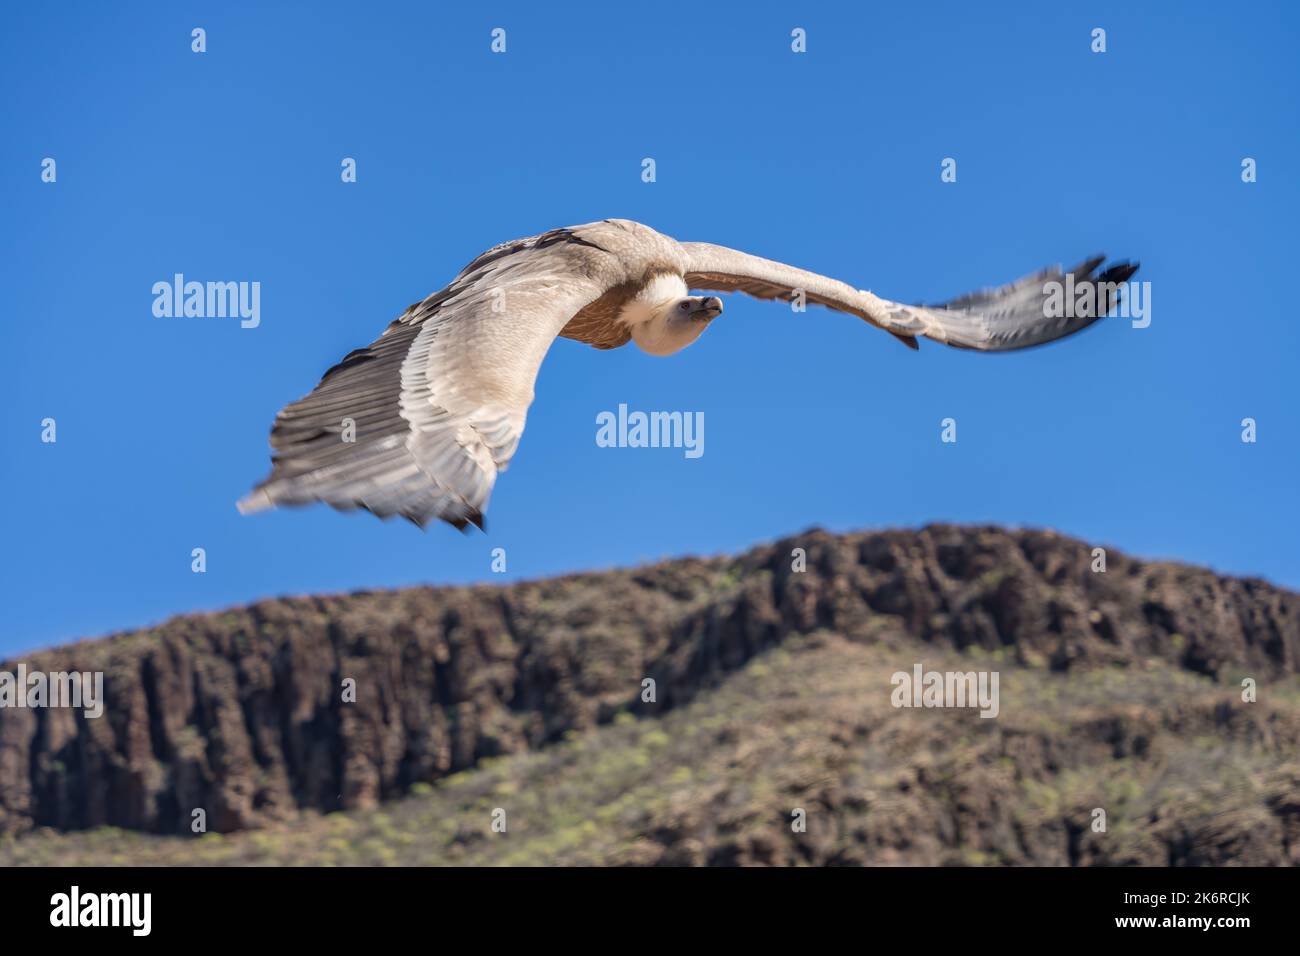 MASPALOMAS, GRAN CANARIA, ESPAGNE - MARS 8 : Vulture de griffon eurasien en vol au parc Palmitos, Maspalomas, Gran Canaria, îles Canaries, Espagne sur Ma Banque D'Images